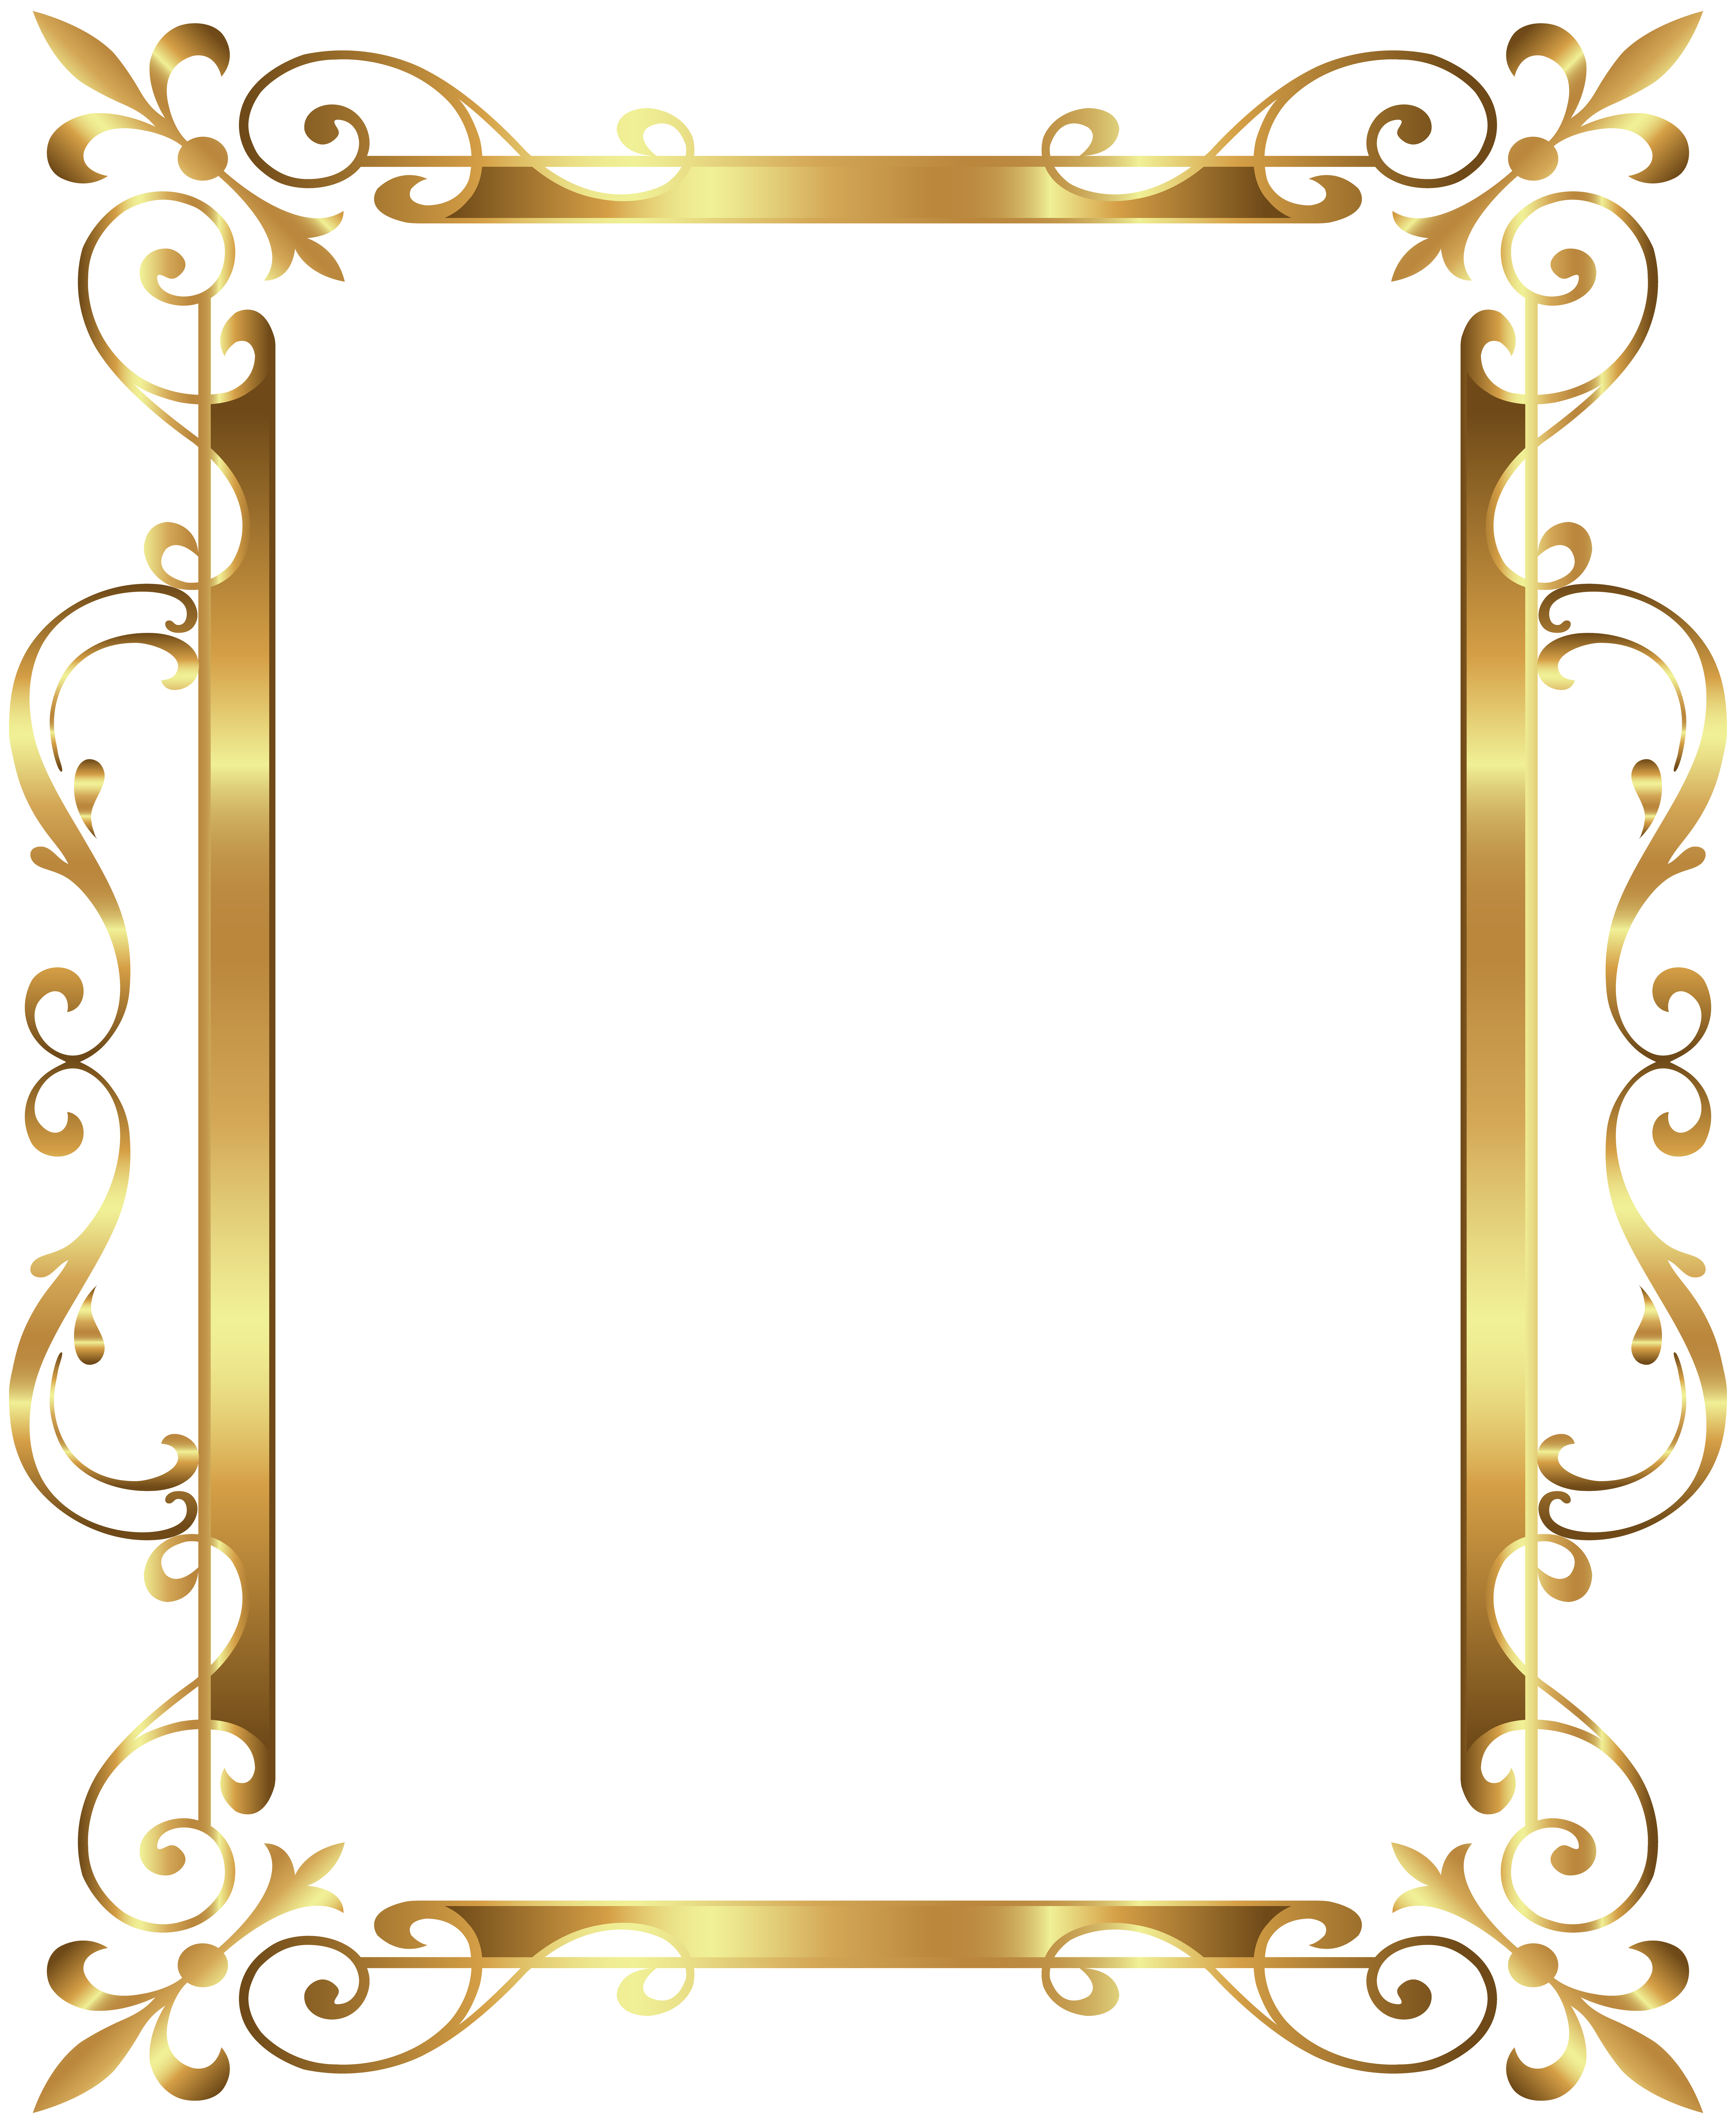 Gold frame Clip art - Gold Border Frame Deco Transparent Clip Art Image ...